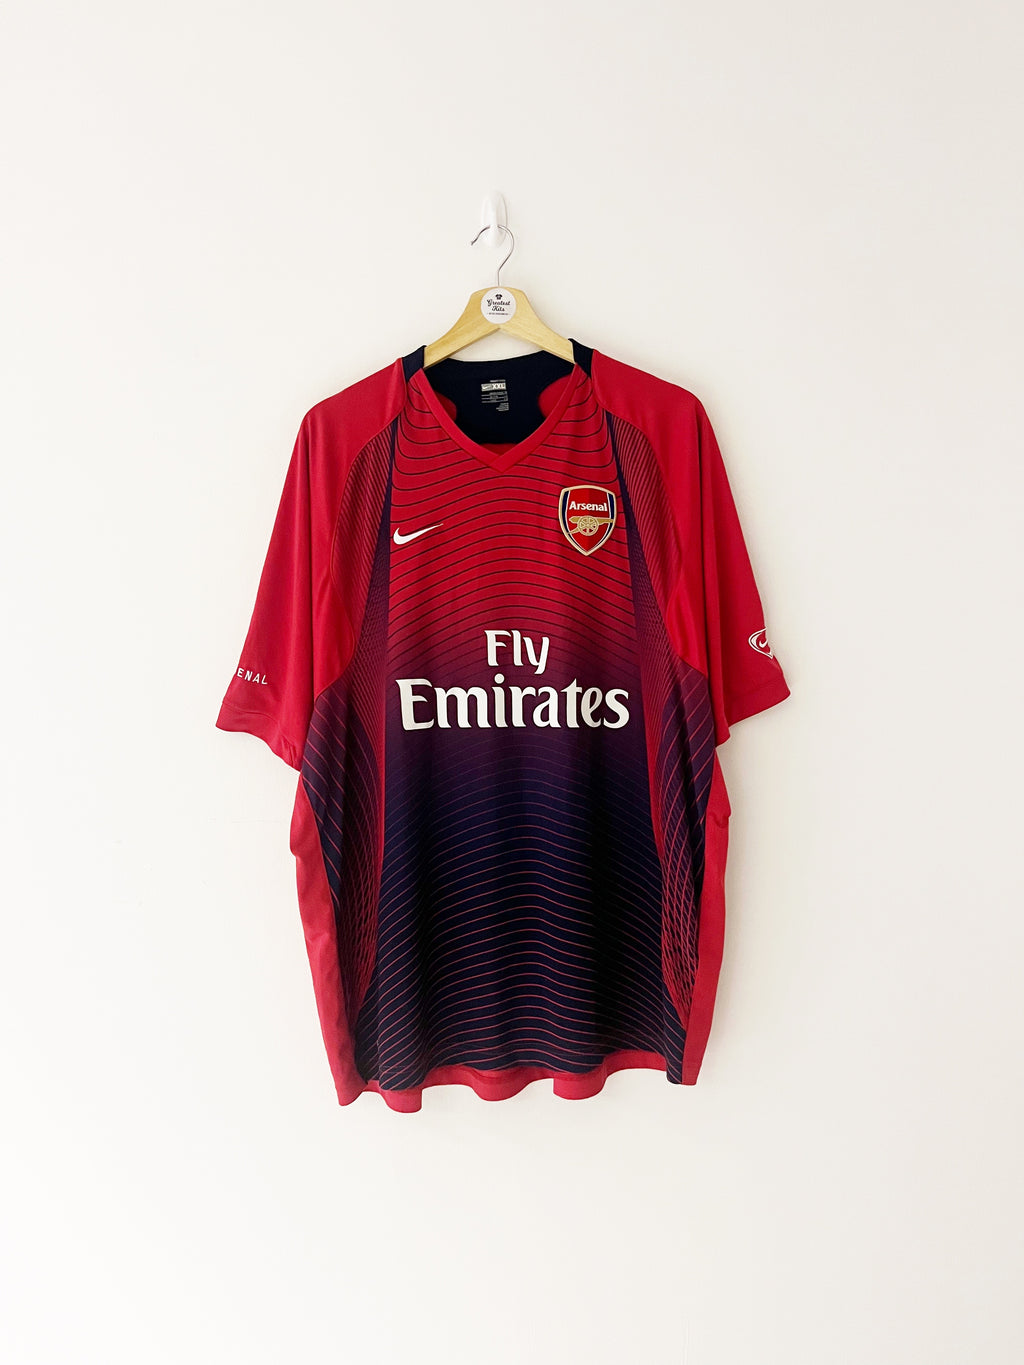 2006/08 Arsenal Training Shirt (XXL) 6.5/10